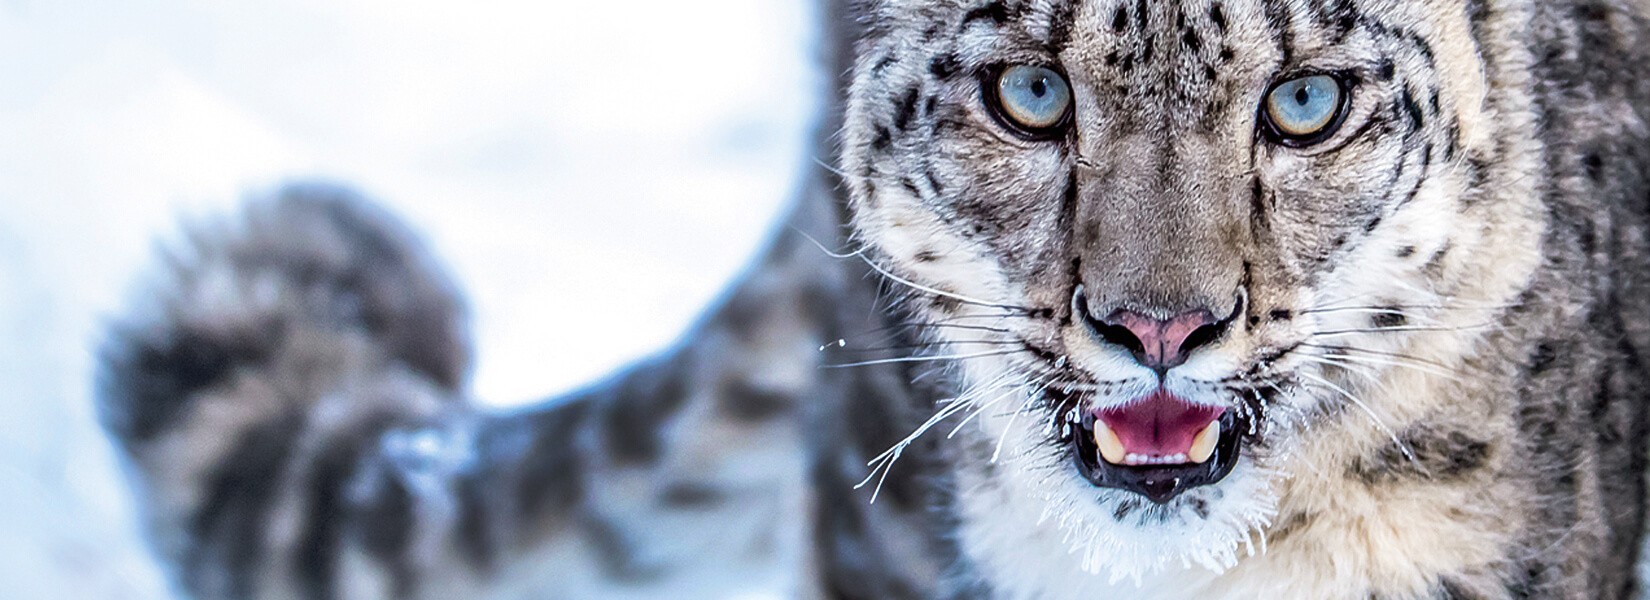 snow leopard photography tour